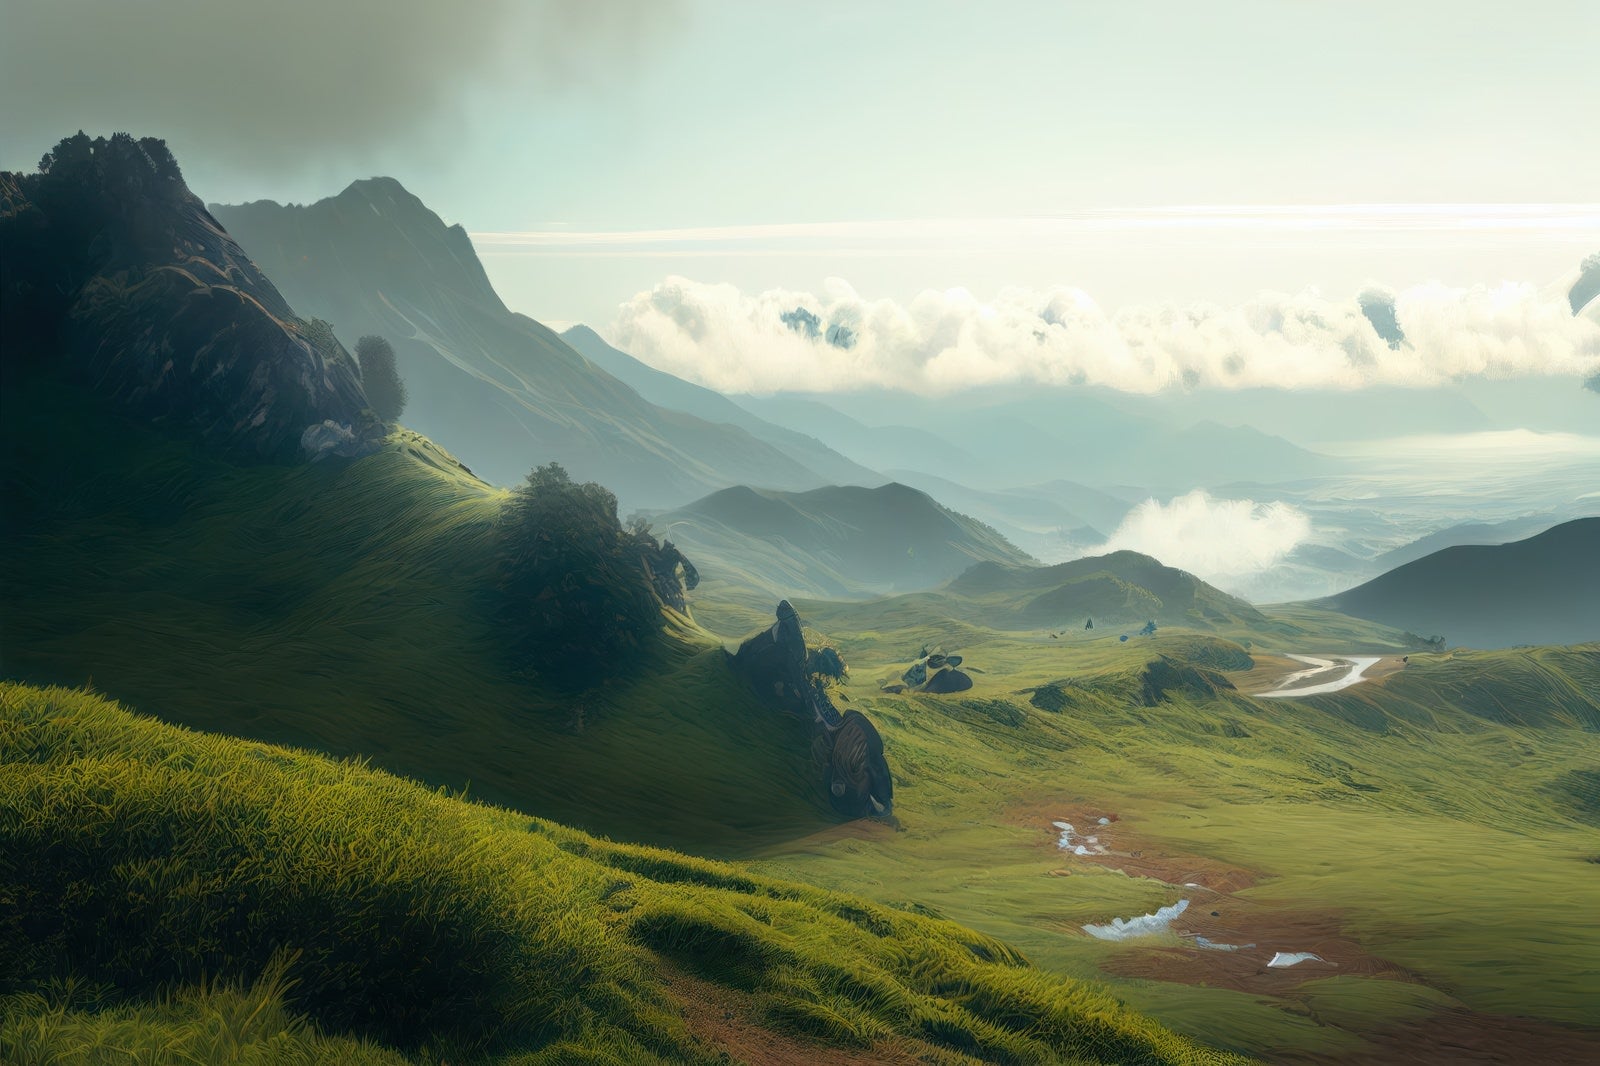 「壮大なパノラマと山並みの絶景」の写真